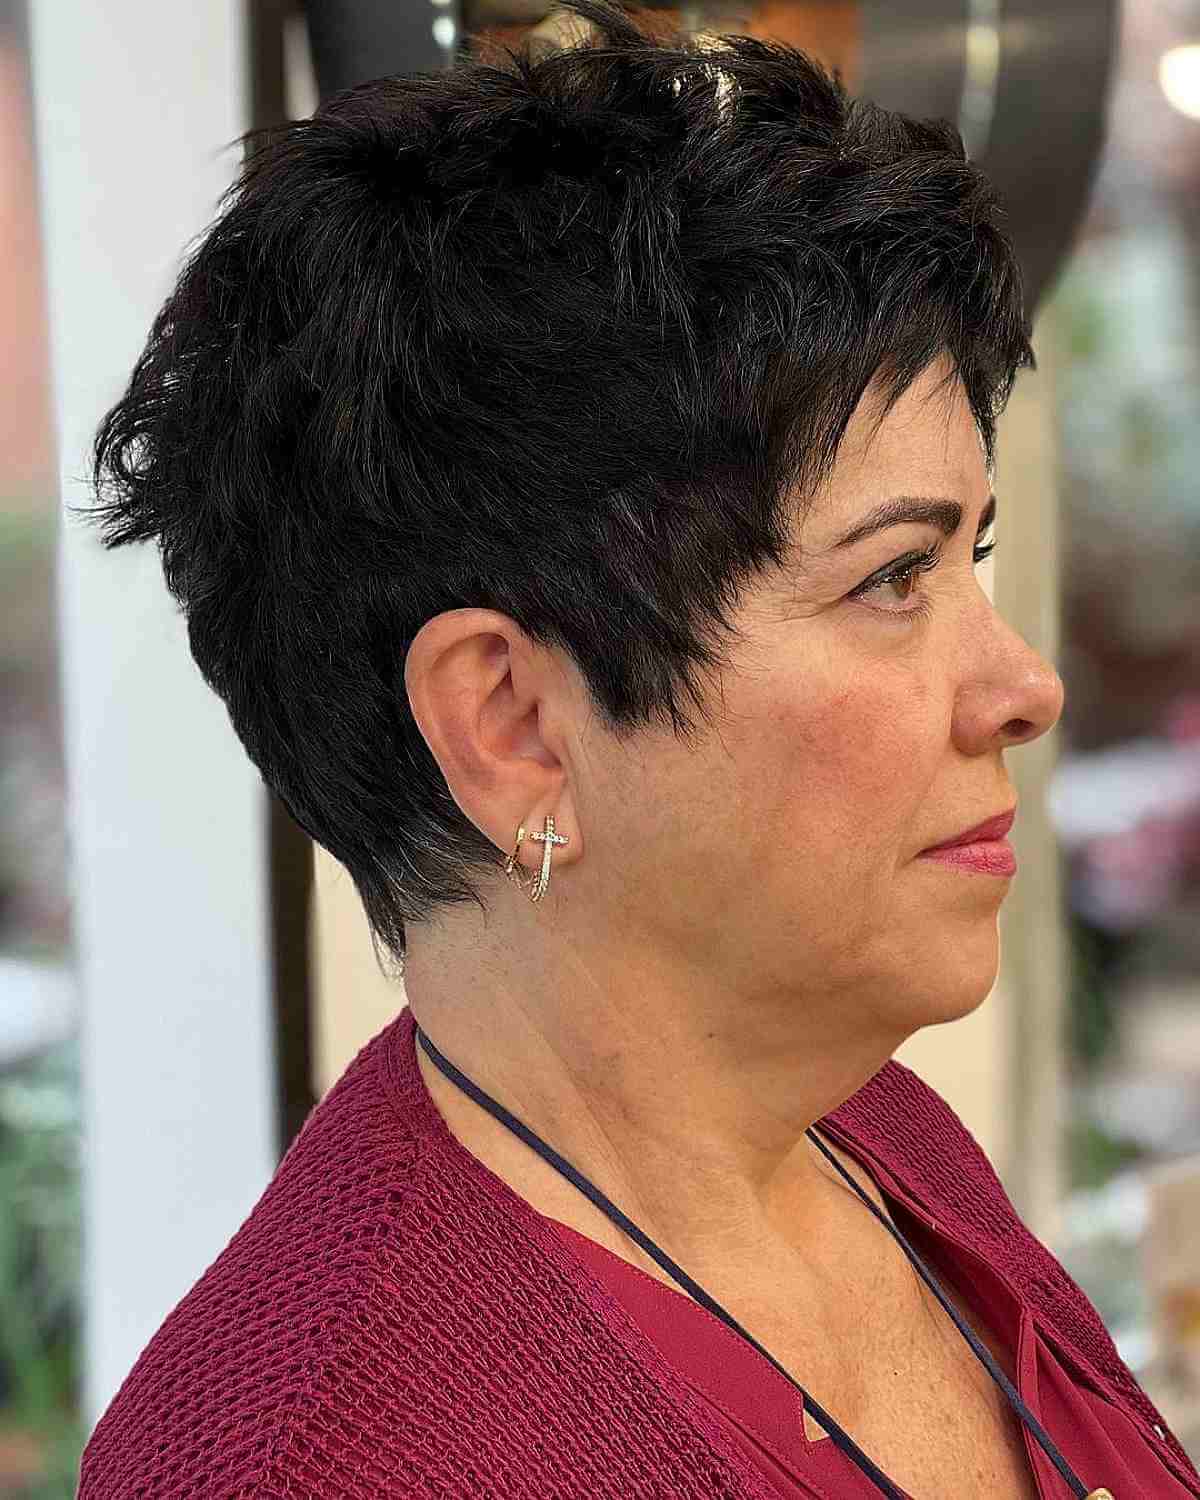 Sehr kurzer unordentlicher Haarschnitt für eine 50-jährige Frau